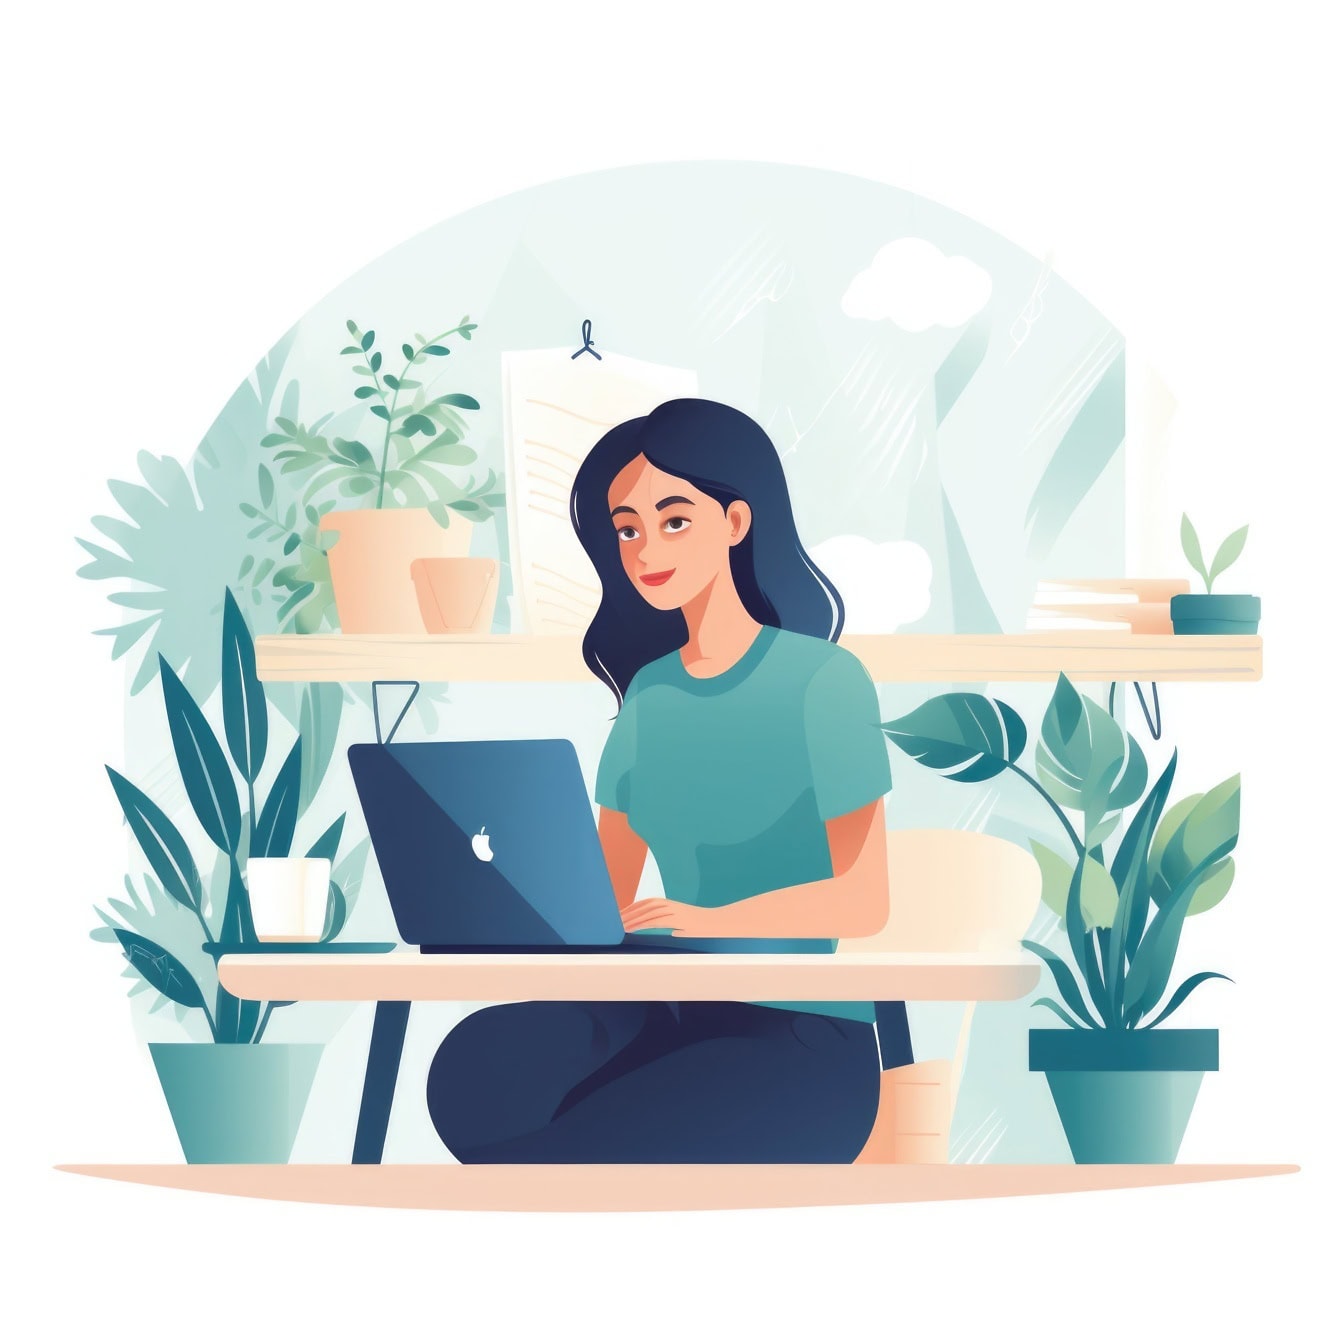 Графічне зображення жінки, яка сидить за письмовим столом у своєму будинку та працює фрілансером за допомогою свого ноутбука Mackintosh